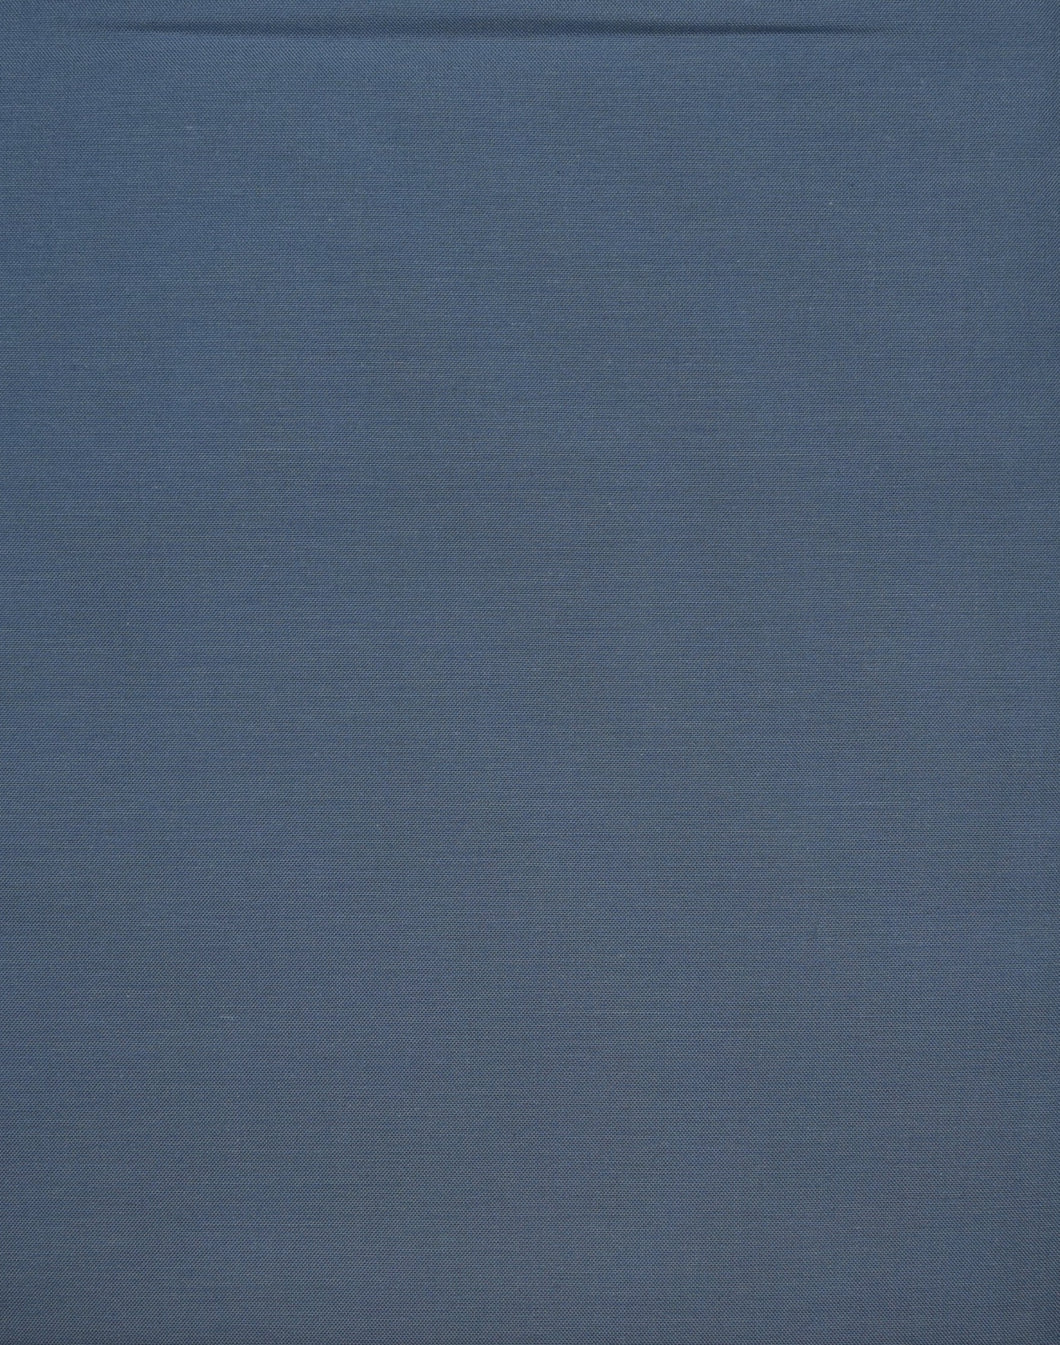 Solid medium light blue quilting cotton